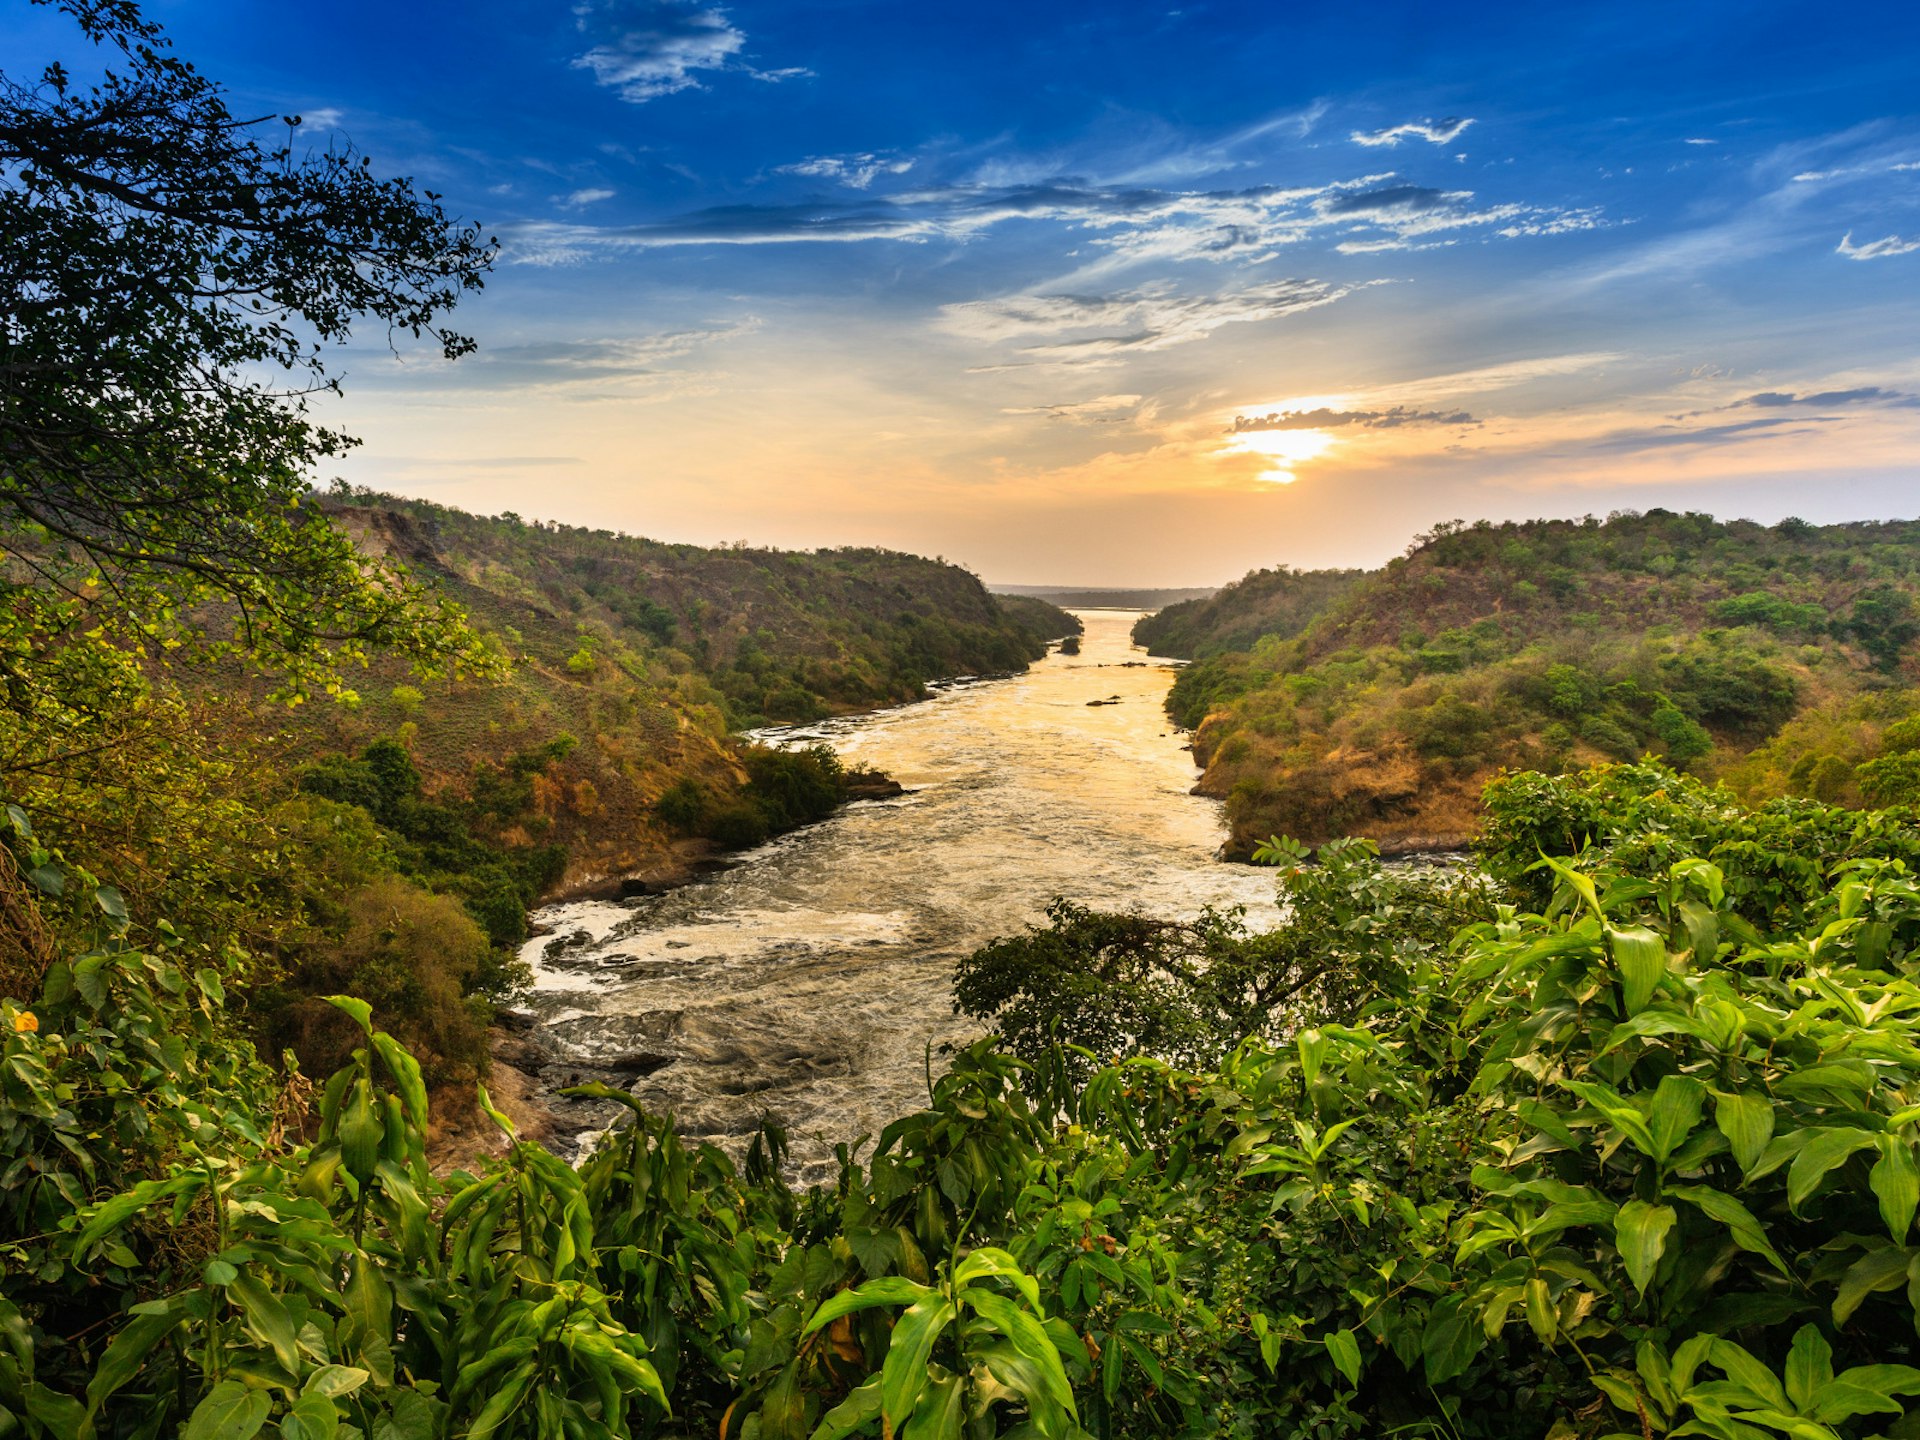 The River Nile running through Murchison Falls National Park, Uganda © Radek Borovka / Shutterstock